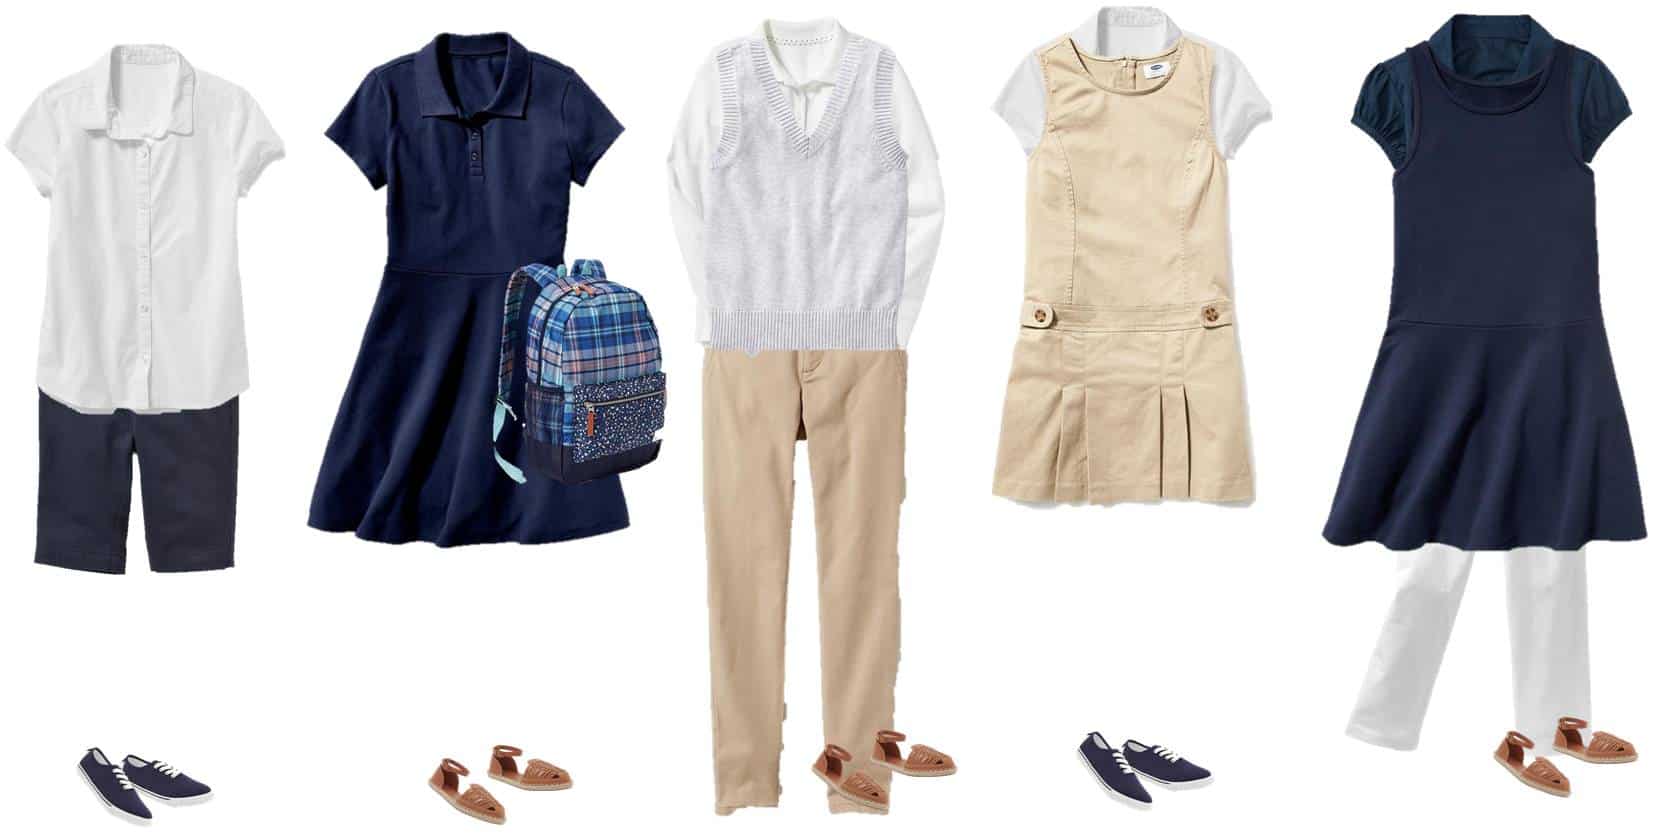 Mix & Match School Uniforms for Girls